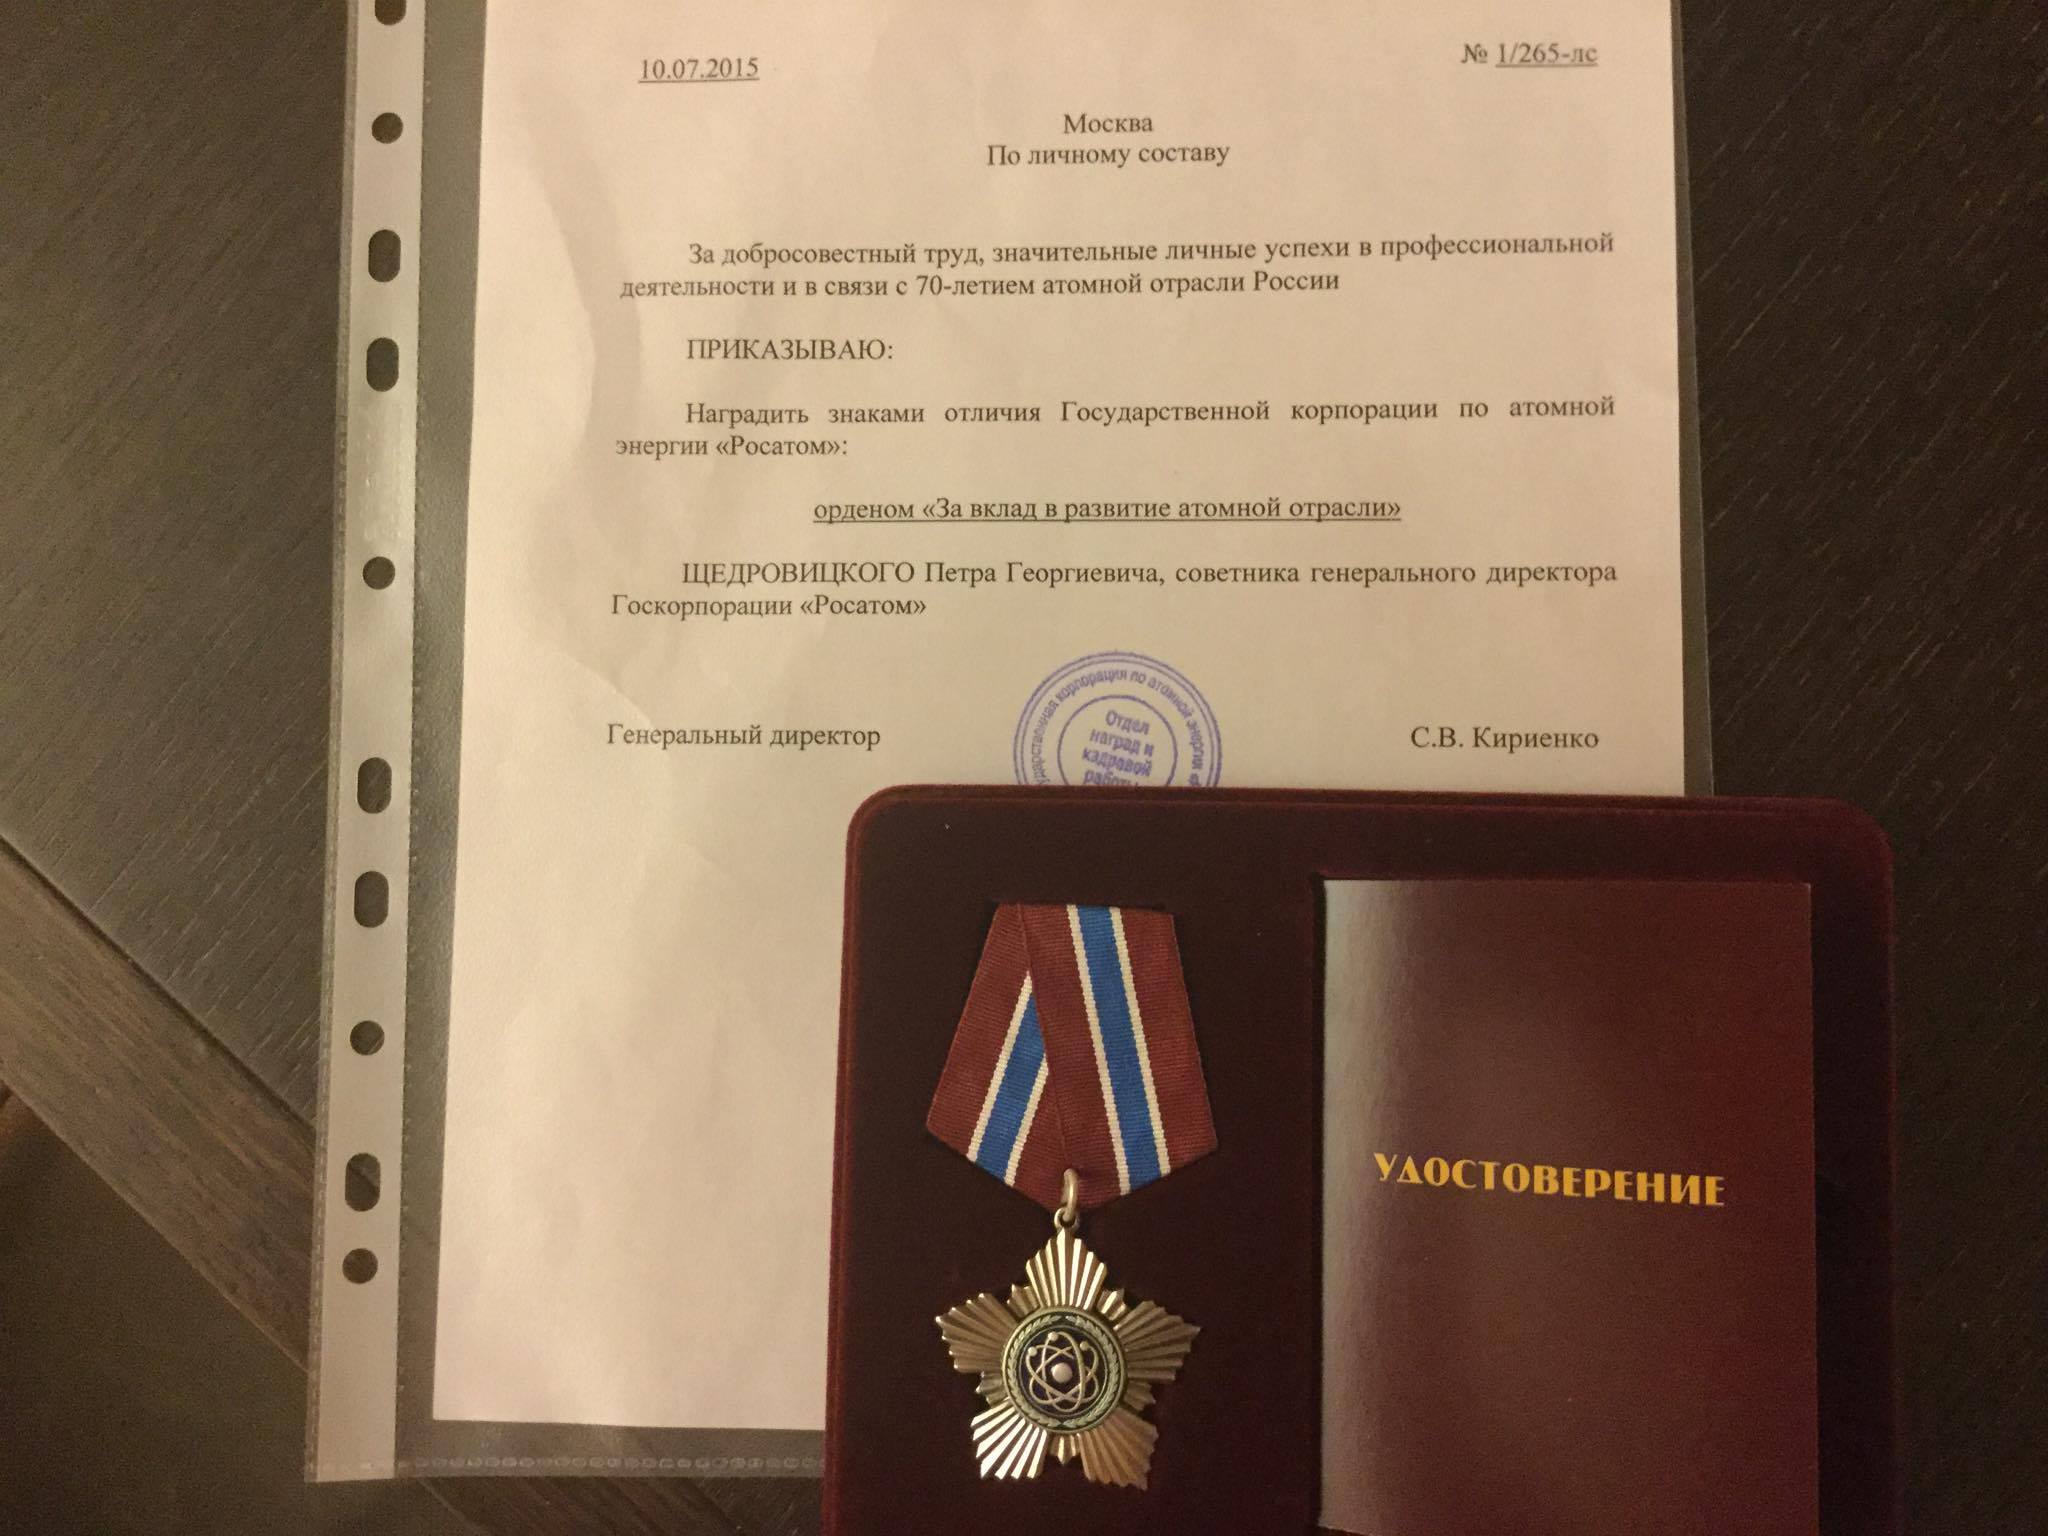 Награды Петра Щедровицкого - 2015 год